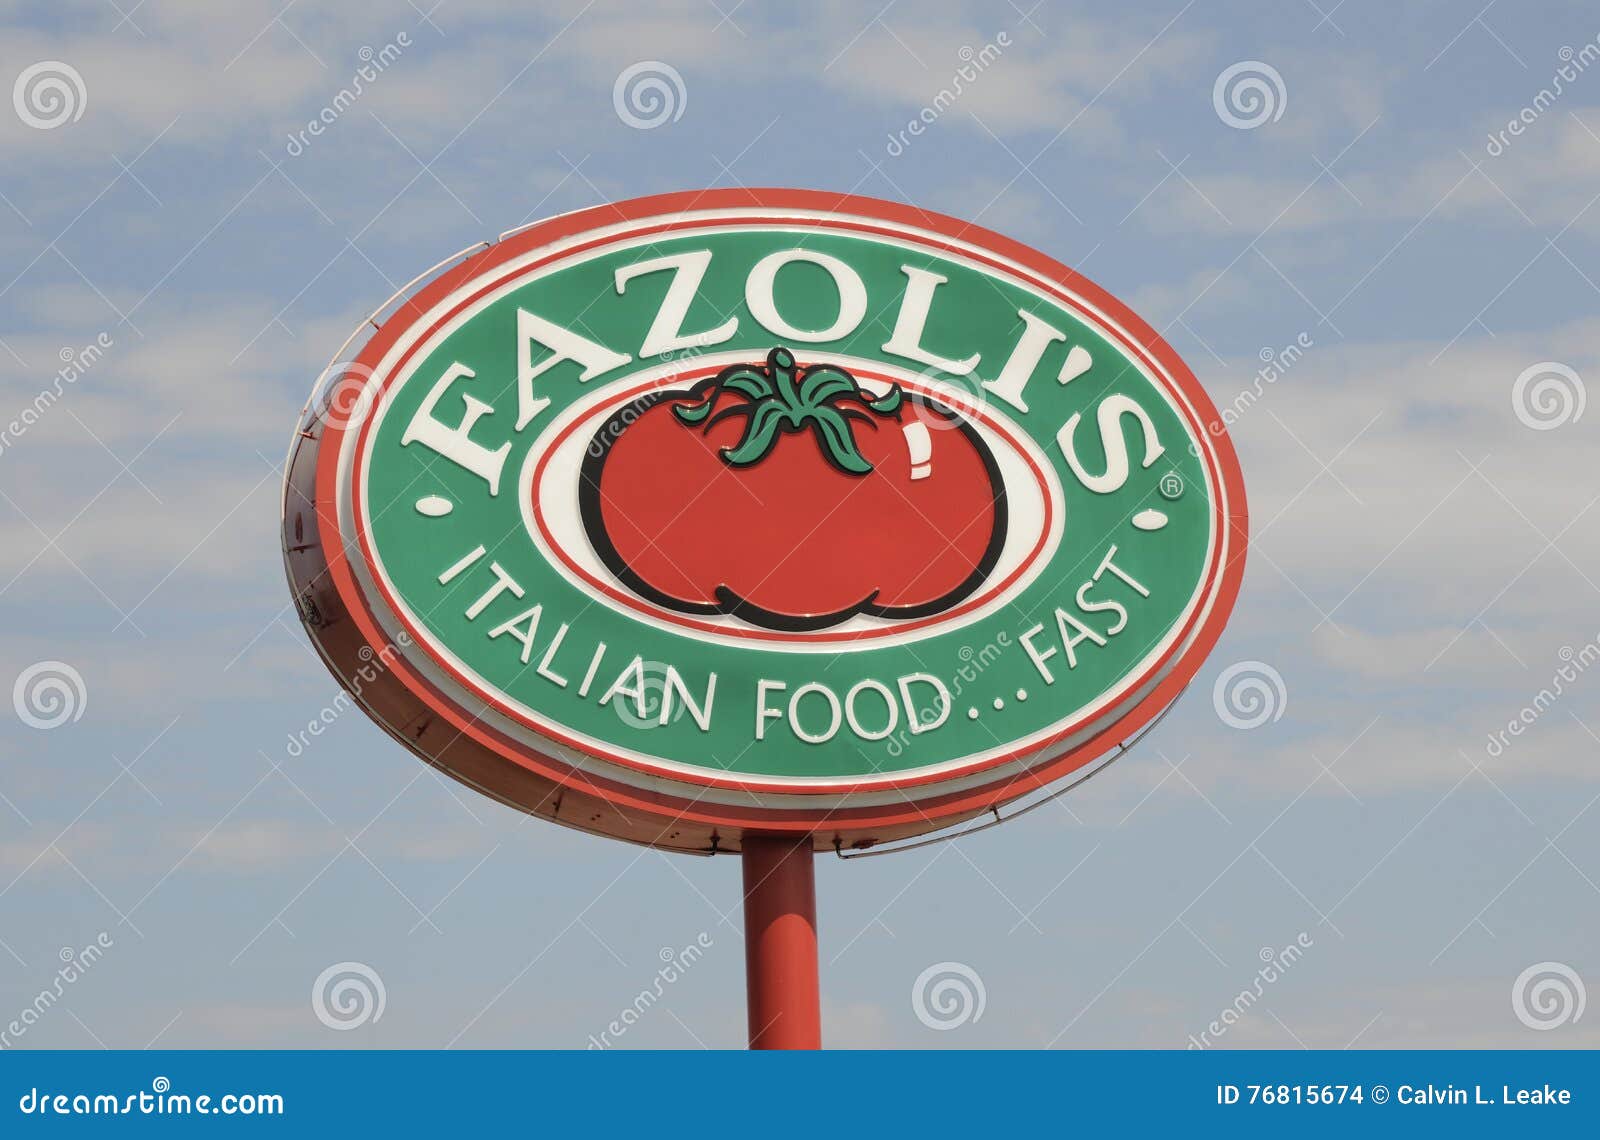 Fazoli's Italian restaurant fast food sign . Fazolis